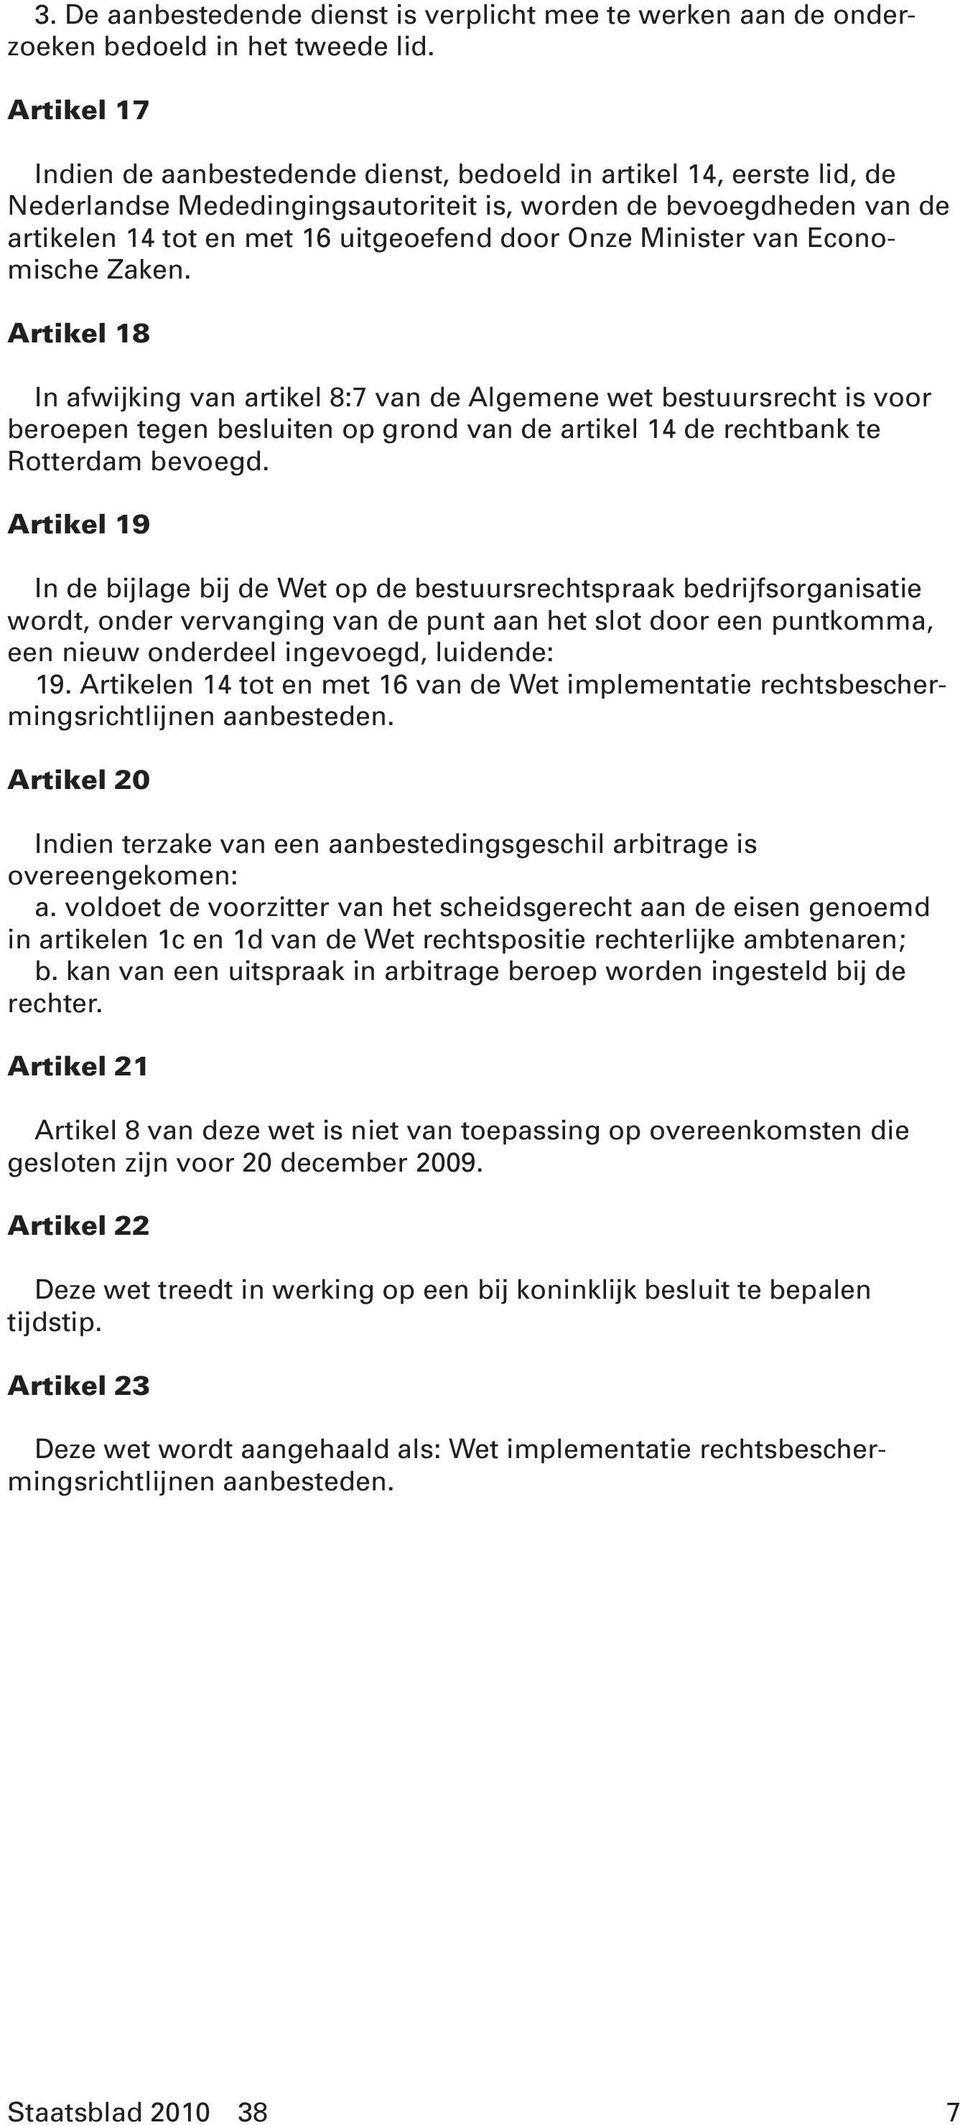 Minister van Economische Zaken. Artikel 18 In afwijking van artikel 8:7 van de Algemene wet bestuursrecht is voor beroepen tegen besluiten op grond van de artikel 14 de rechtbank te Rotterdam bevoegd.